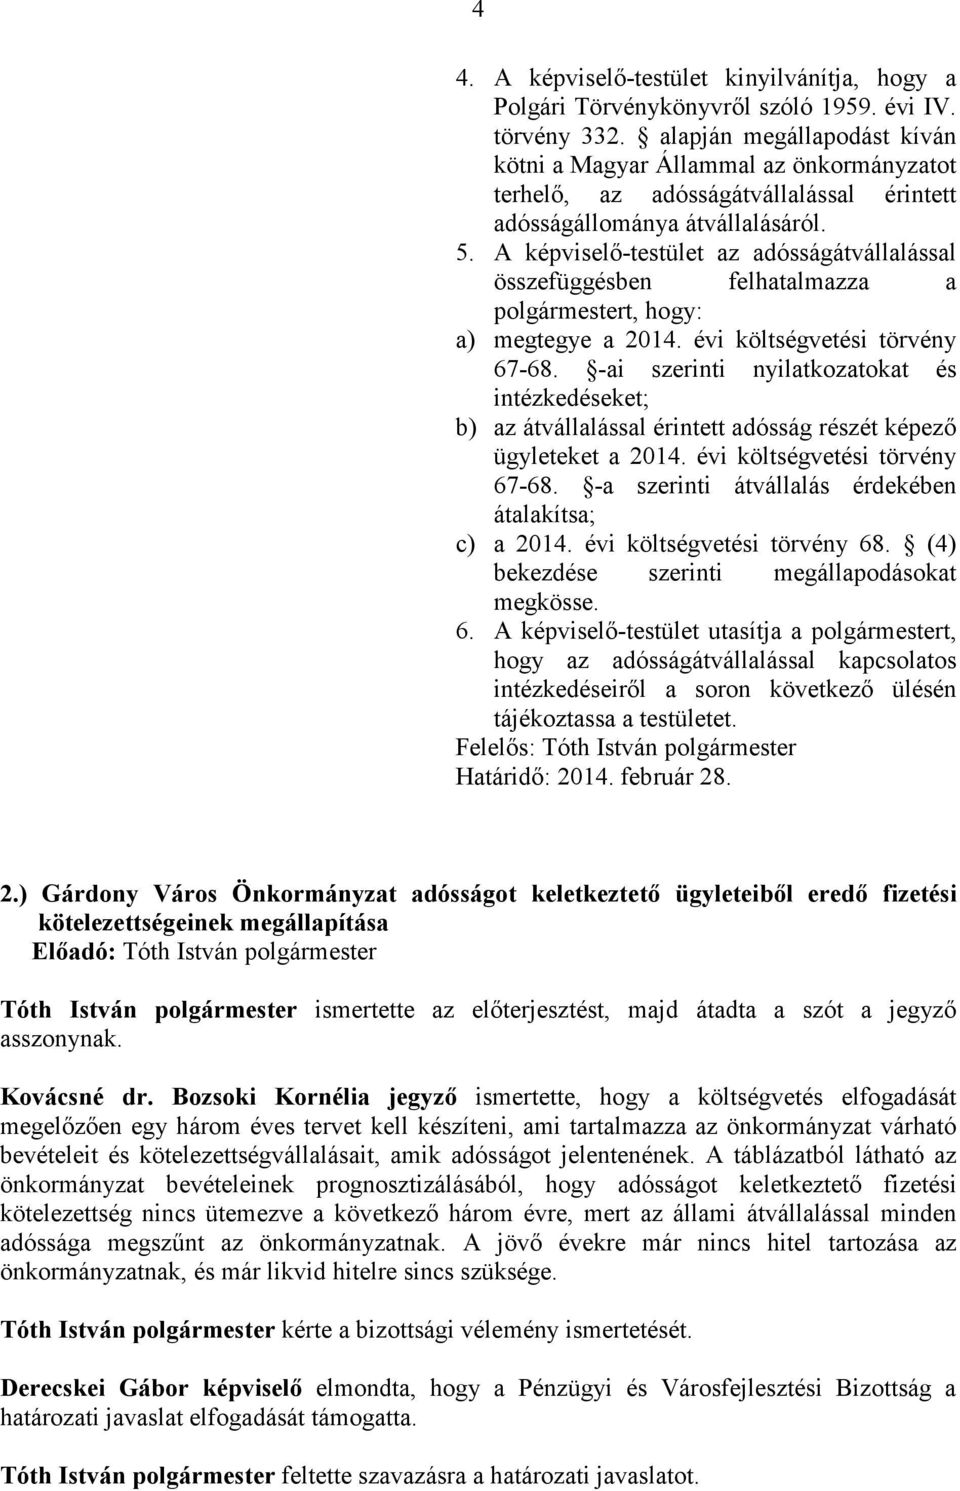 A képviselı-testület az adósságátvállalással összefüggésben felhatalmazza a t, hogy: a) megtegye a 2014. évi költségvetési törvény 67-68.